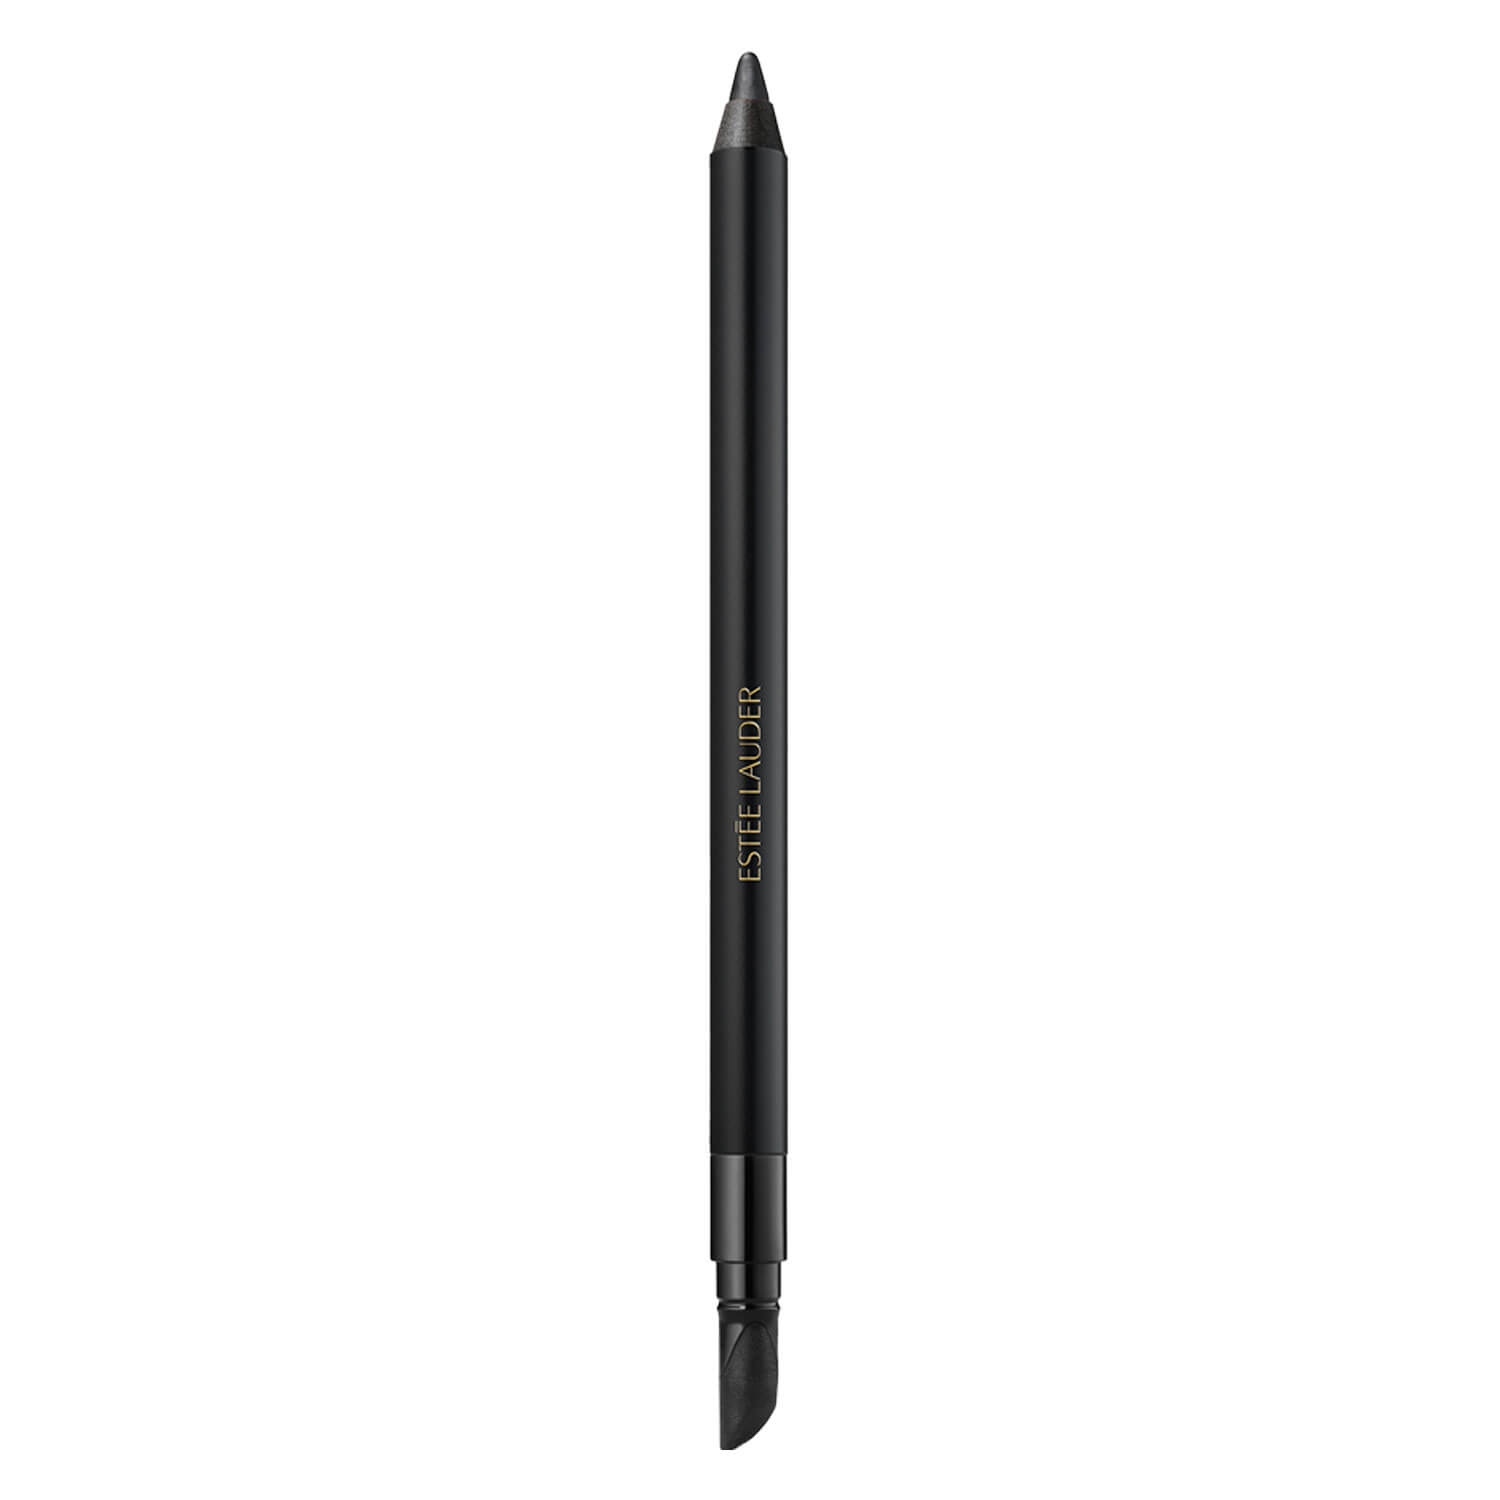 Produktbild von Double Wear - 24H Waterproof Gel Eye Pencil Onyx